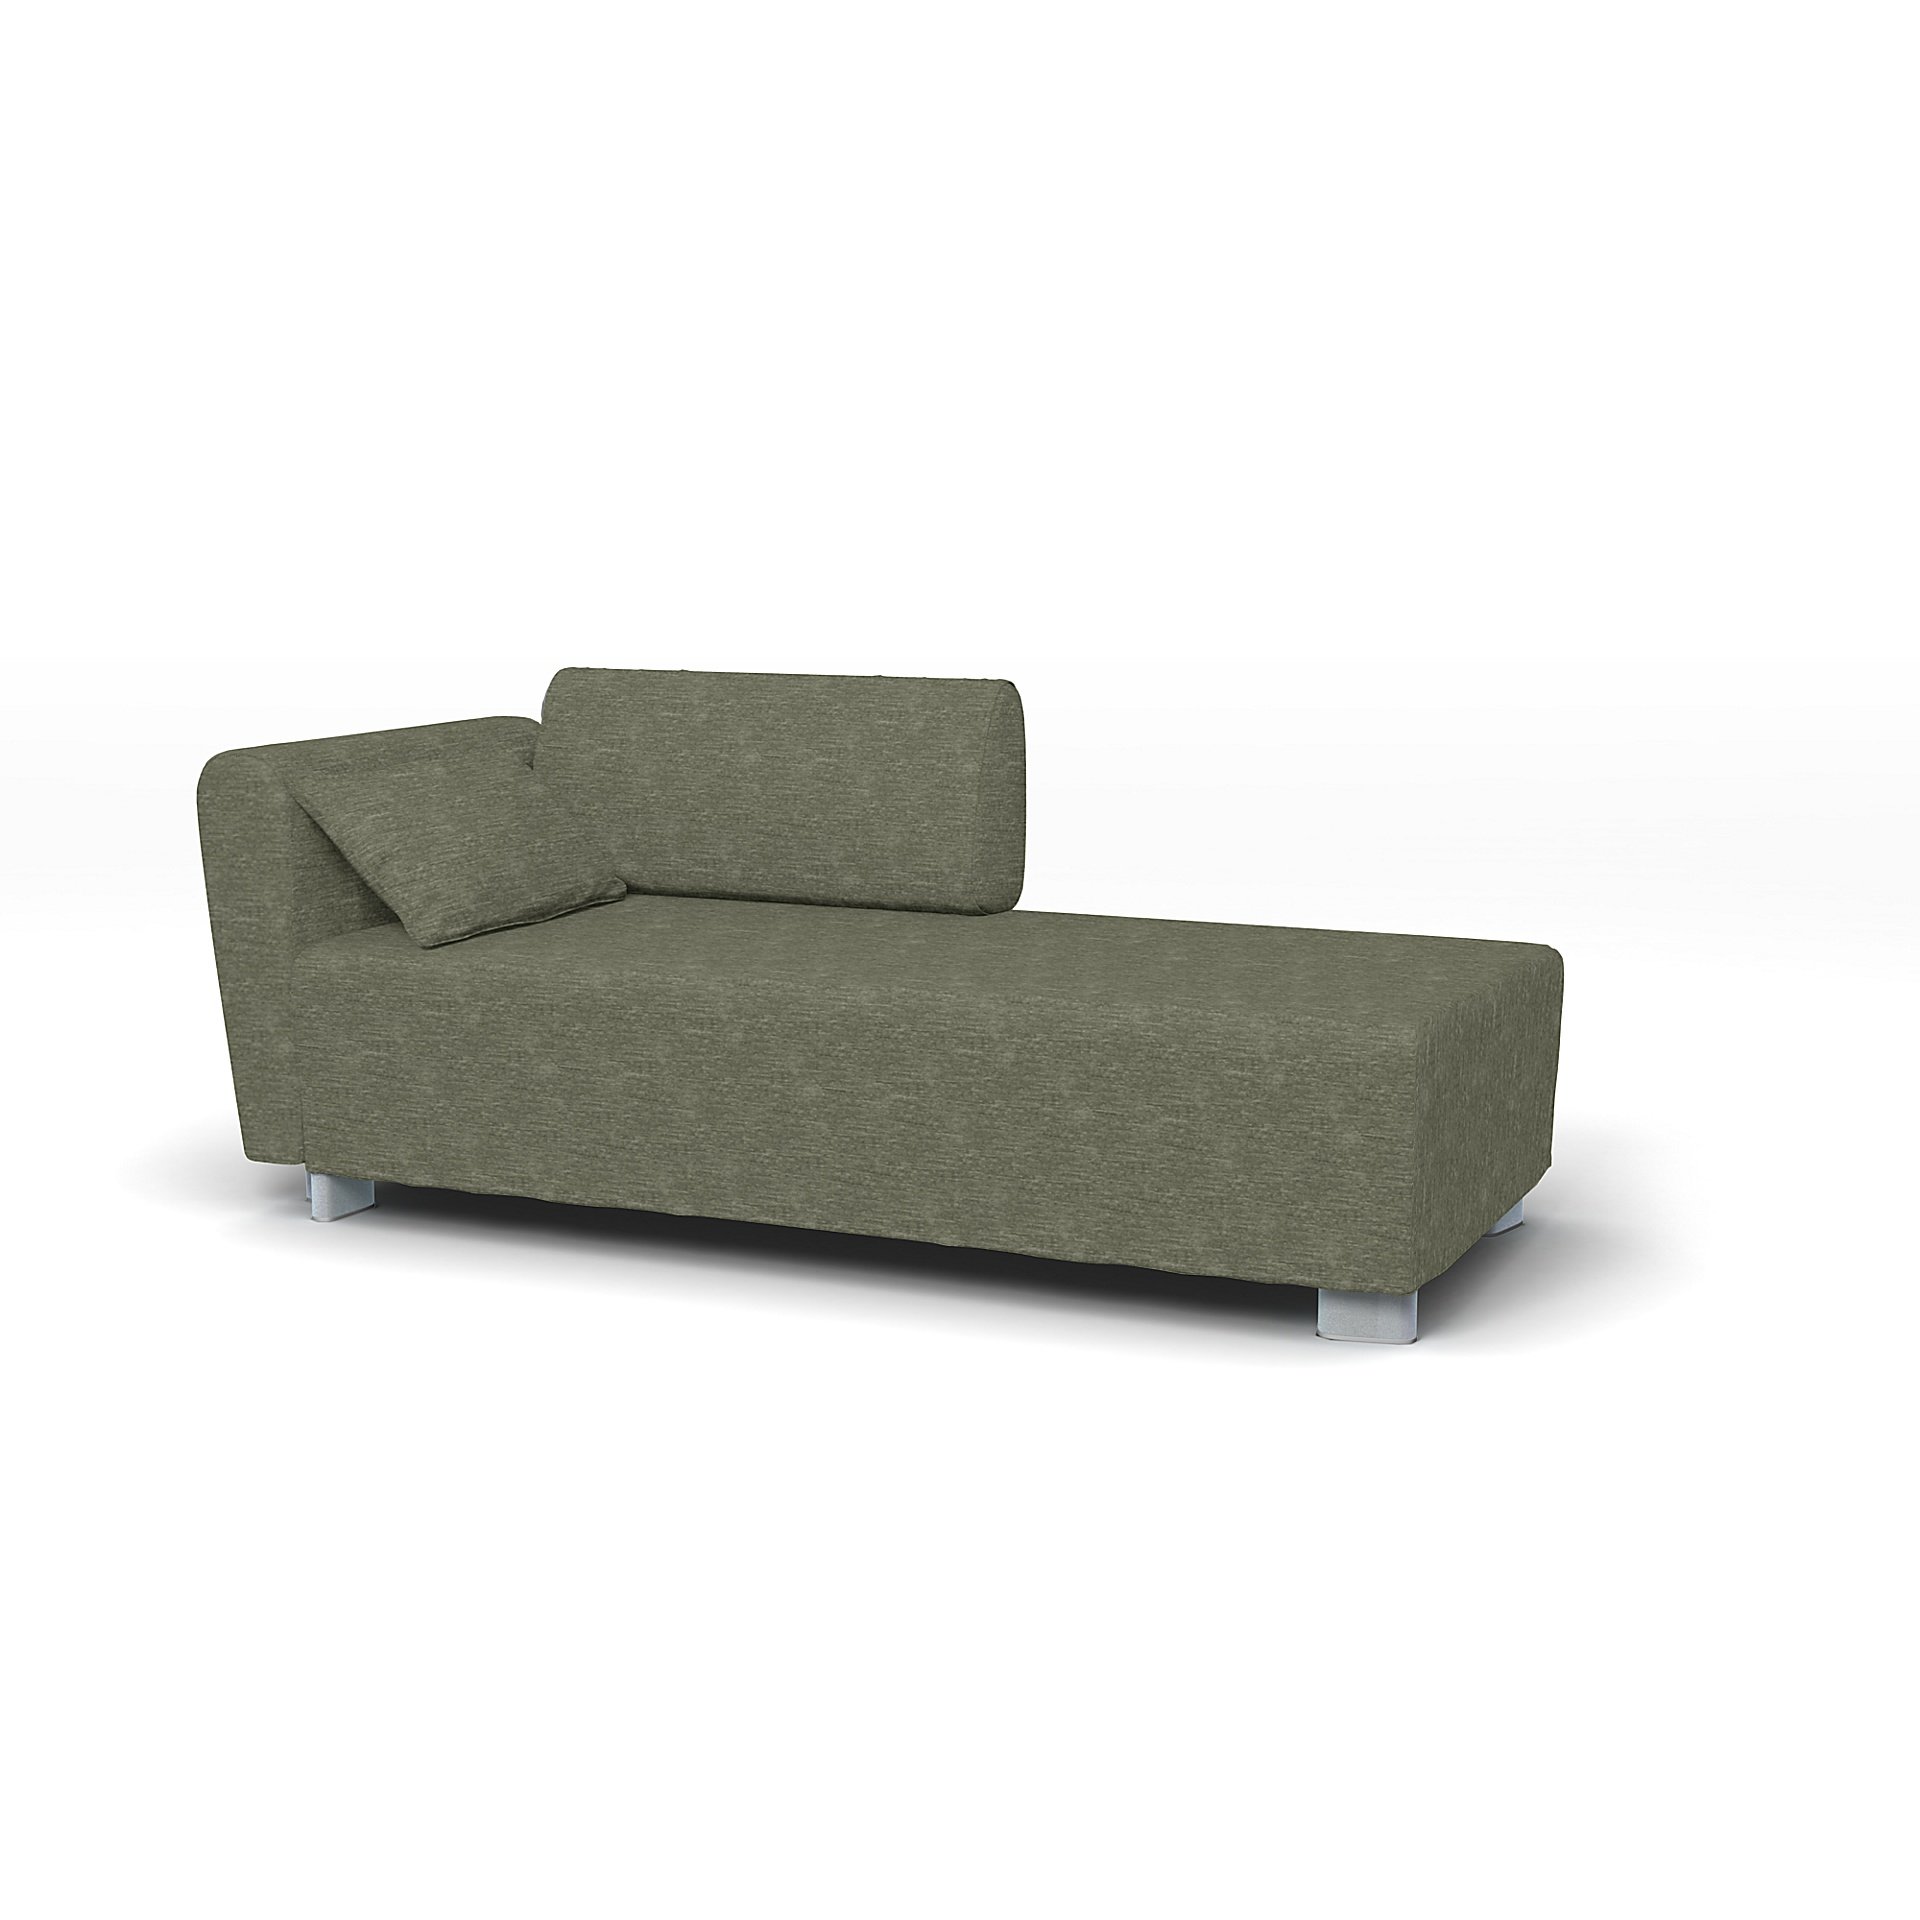 IKEA - Mysinge Chaise Longue with Armrest Cover, Green Grey, Velvet - Bemz